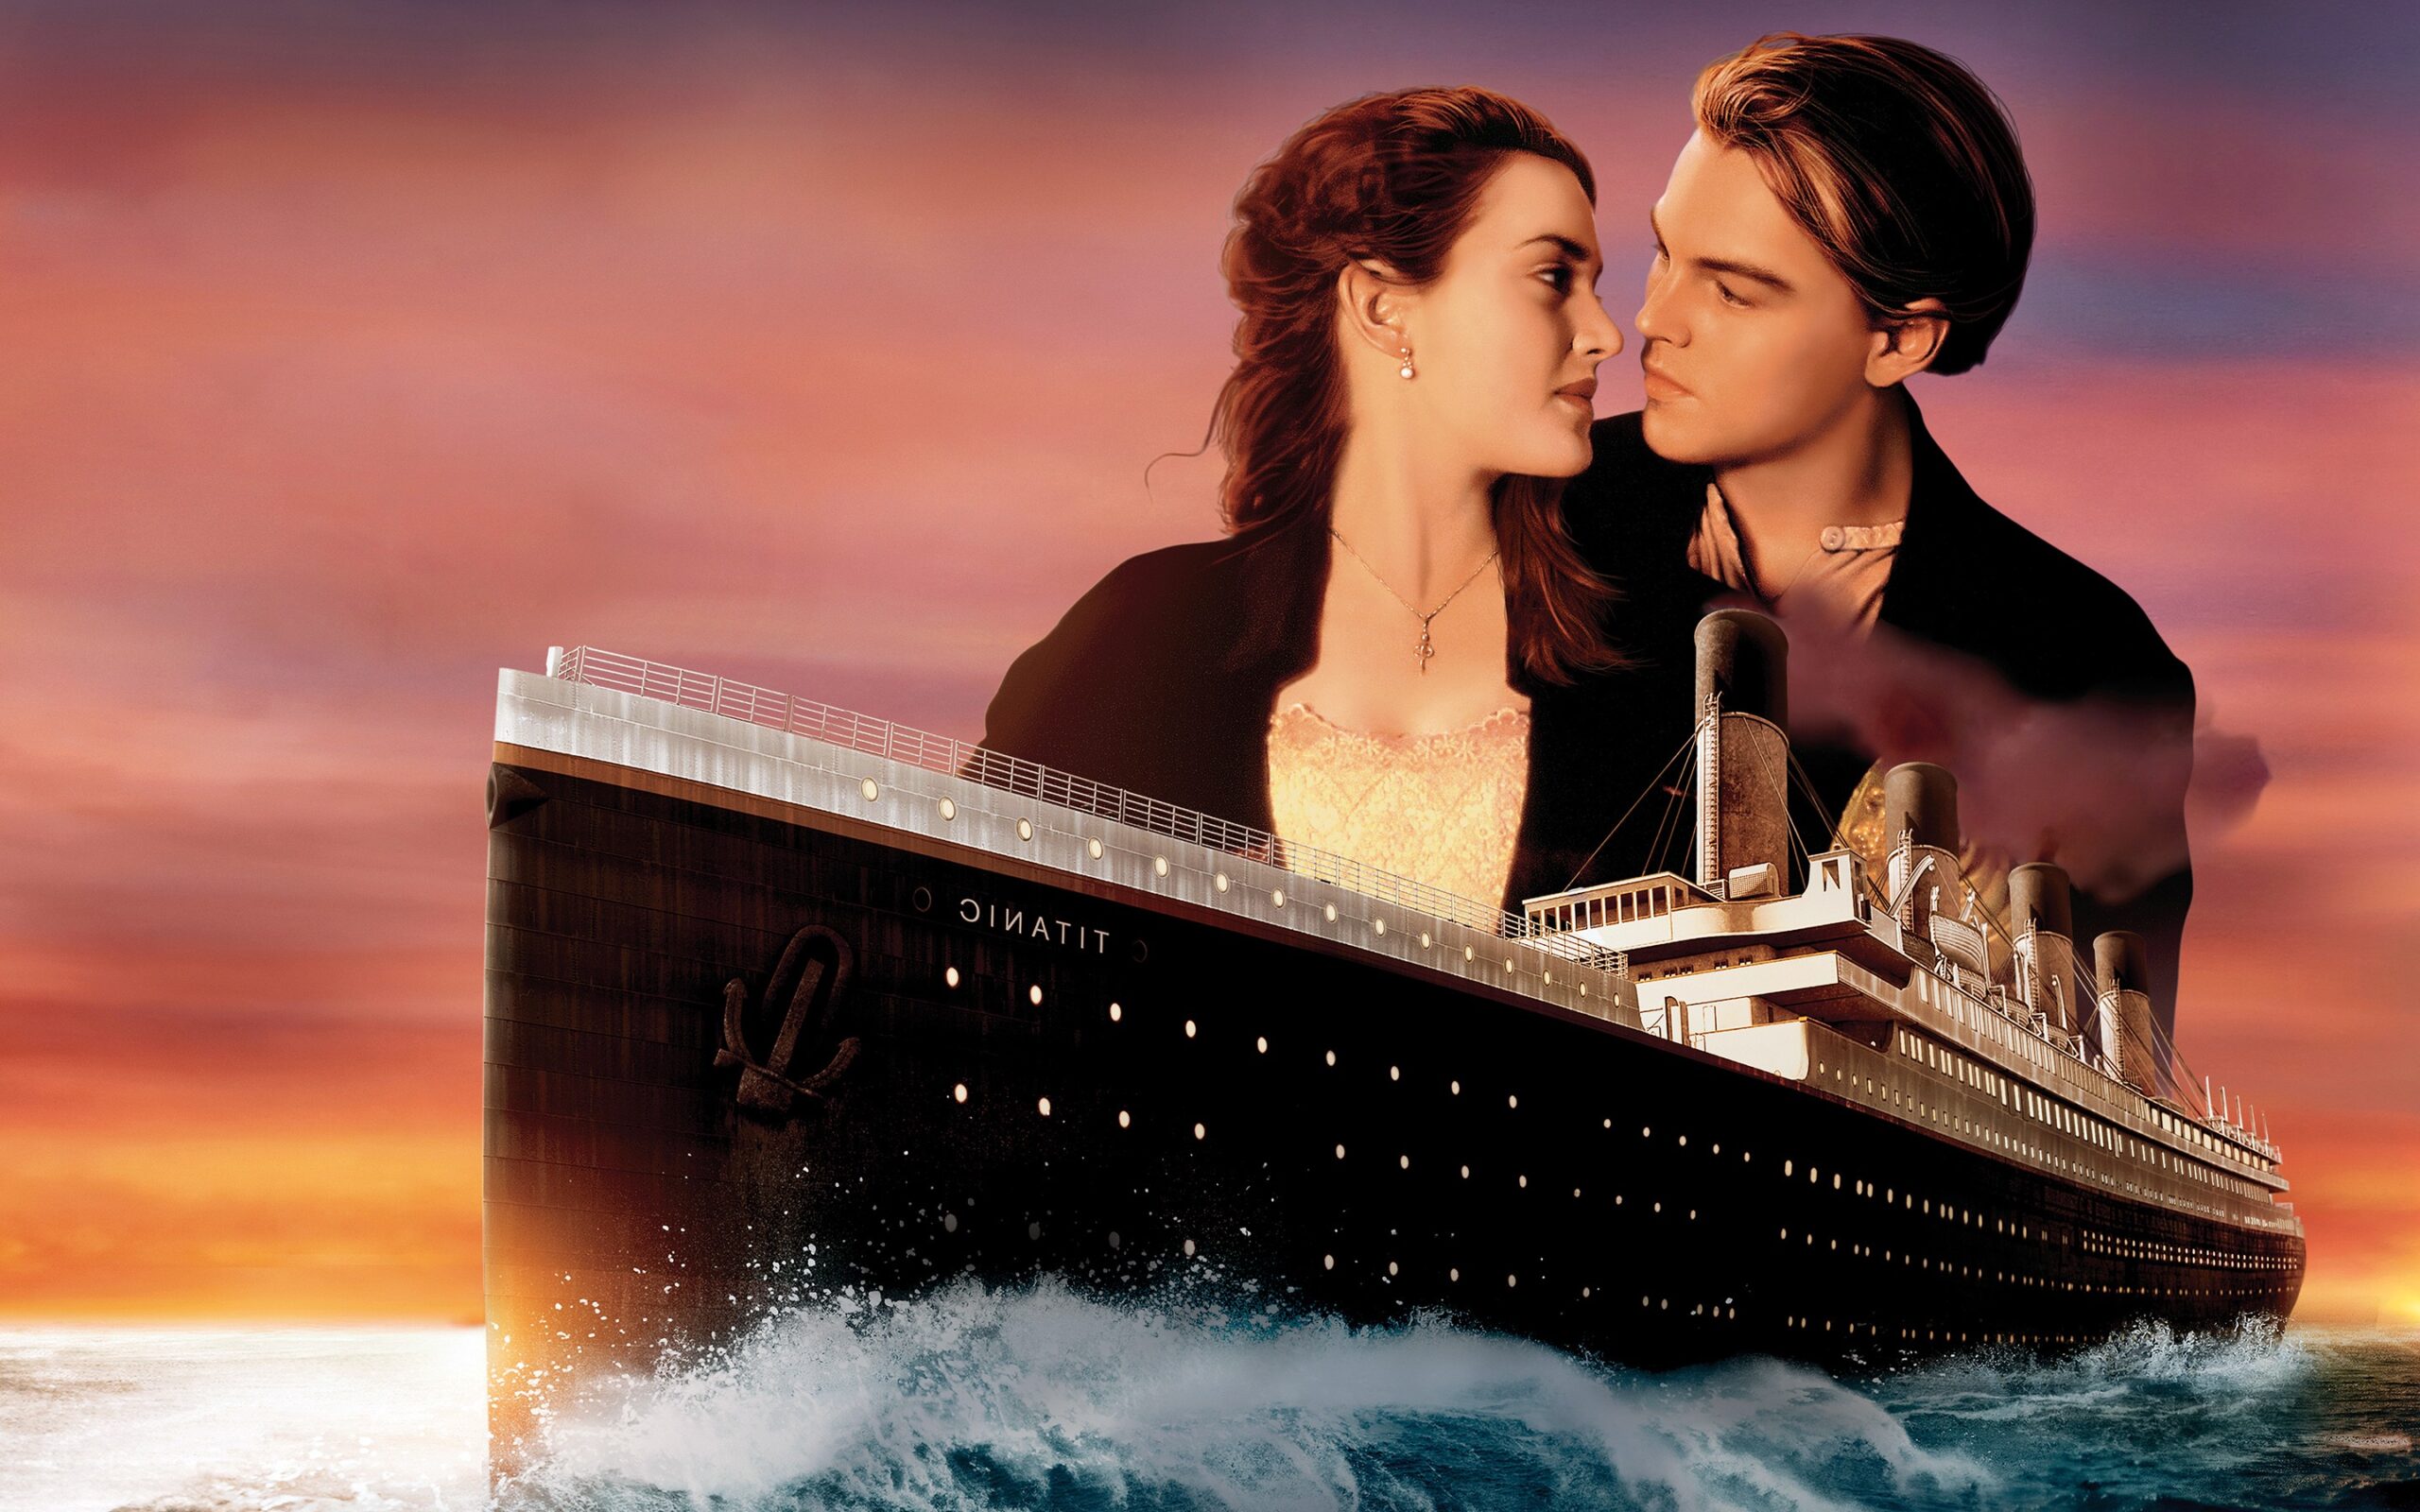 Titanic al cinema | quando vedere in sala il film di James Cameron ...